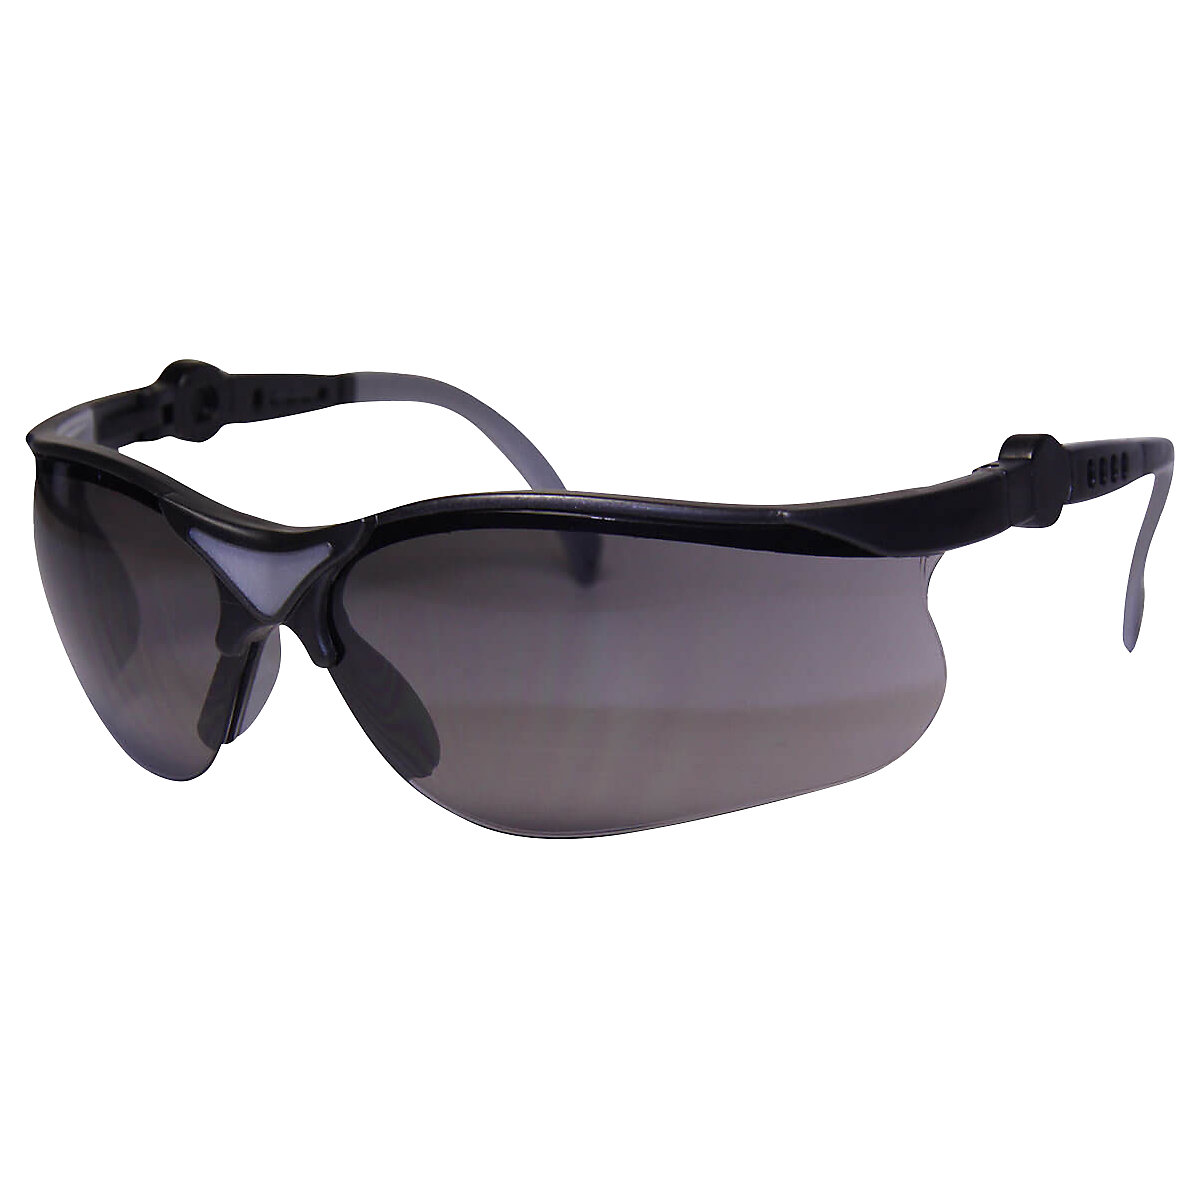 Ochranné brýle IONIC s ochranou proti UV záření